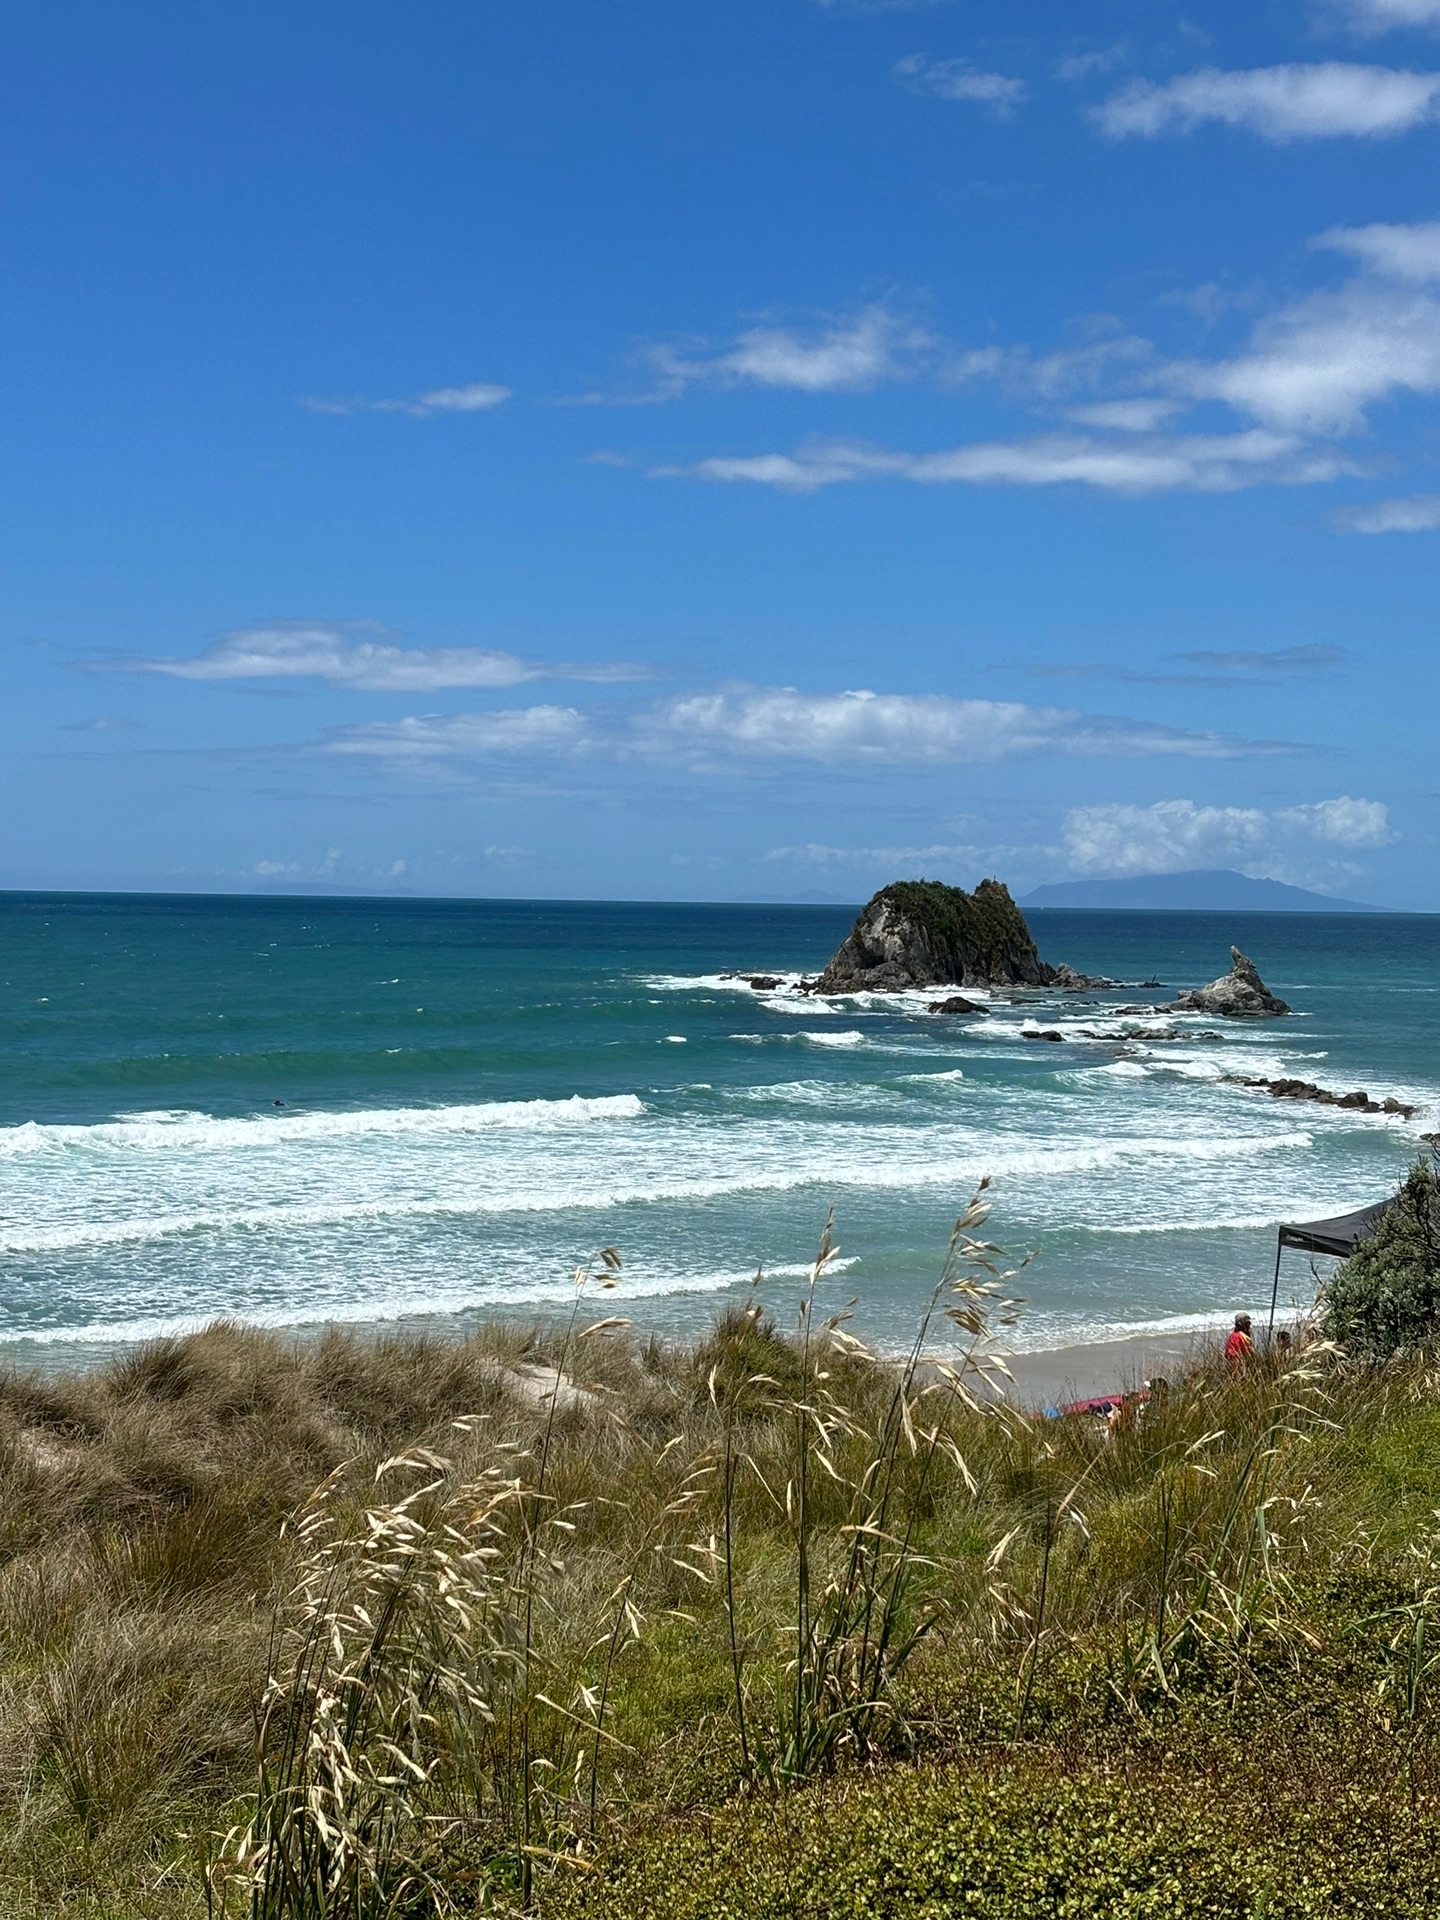 来新西兰北岛感受大自然的魅力吧！！！